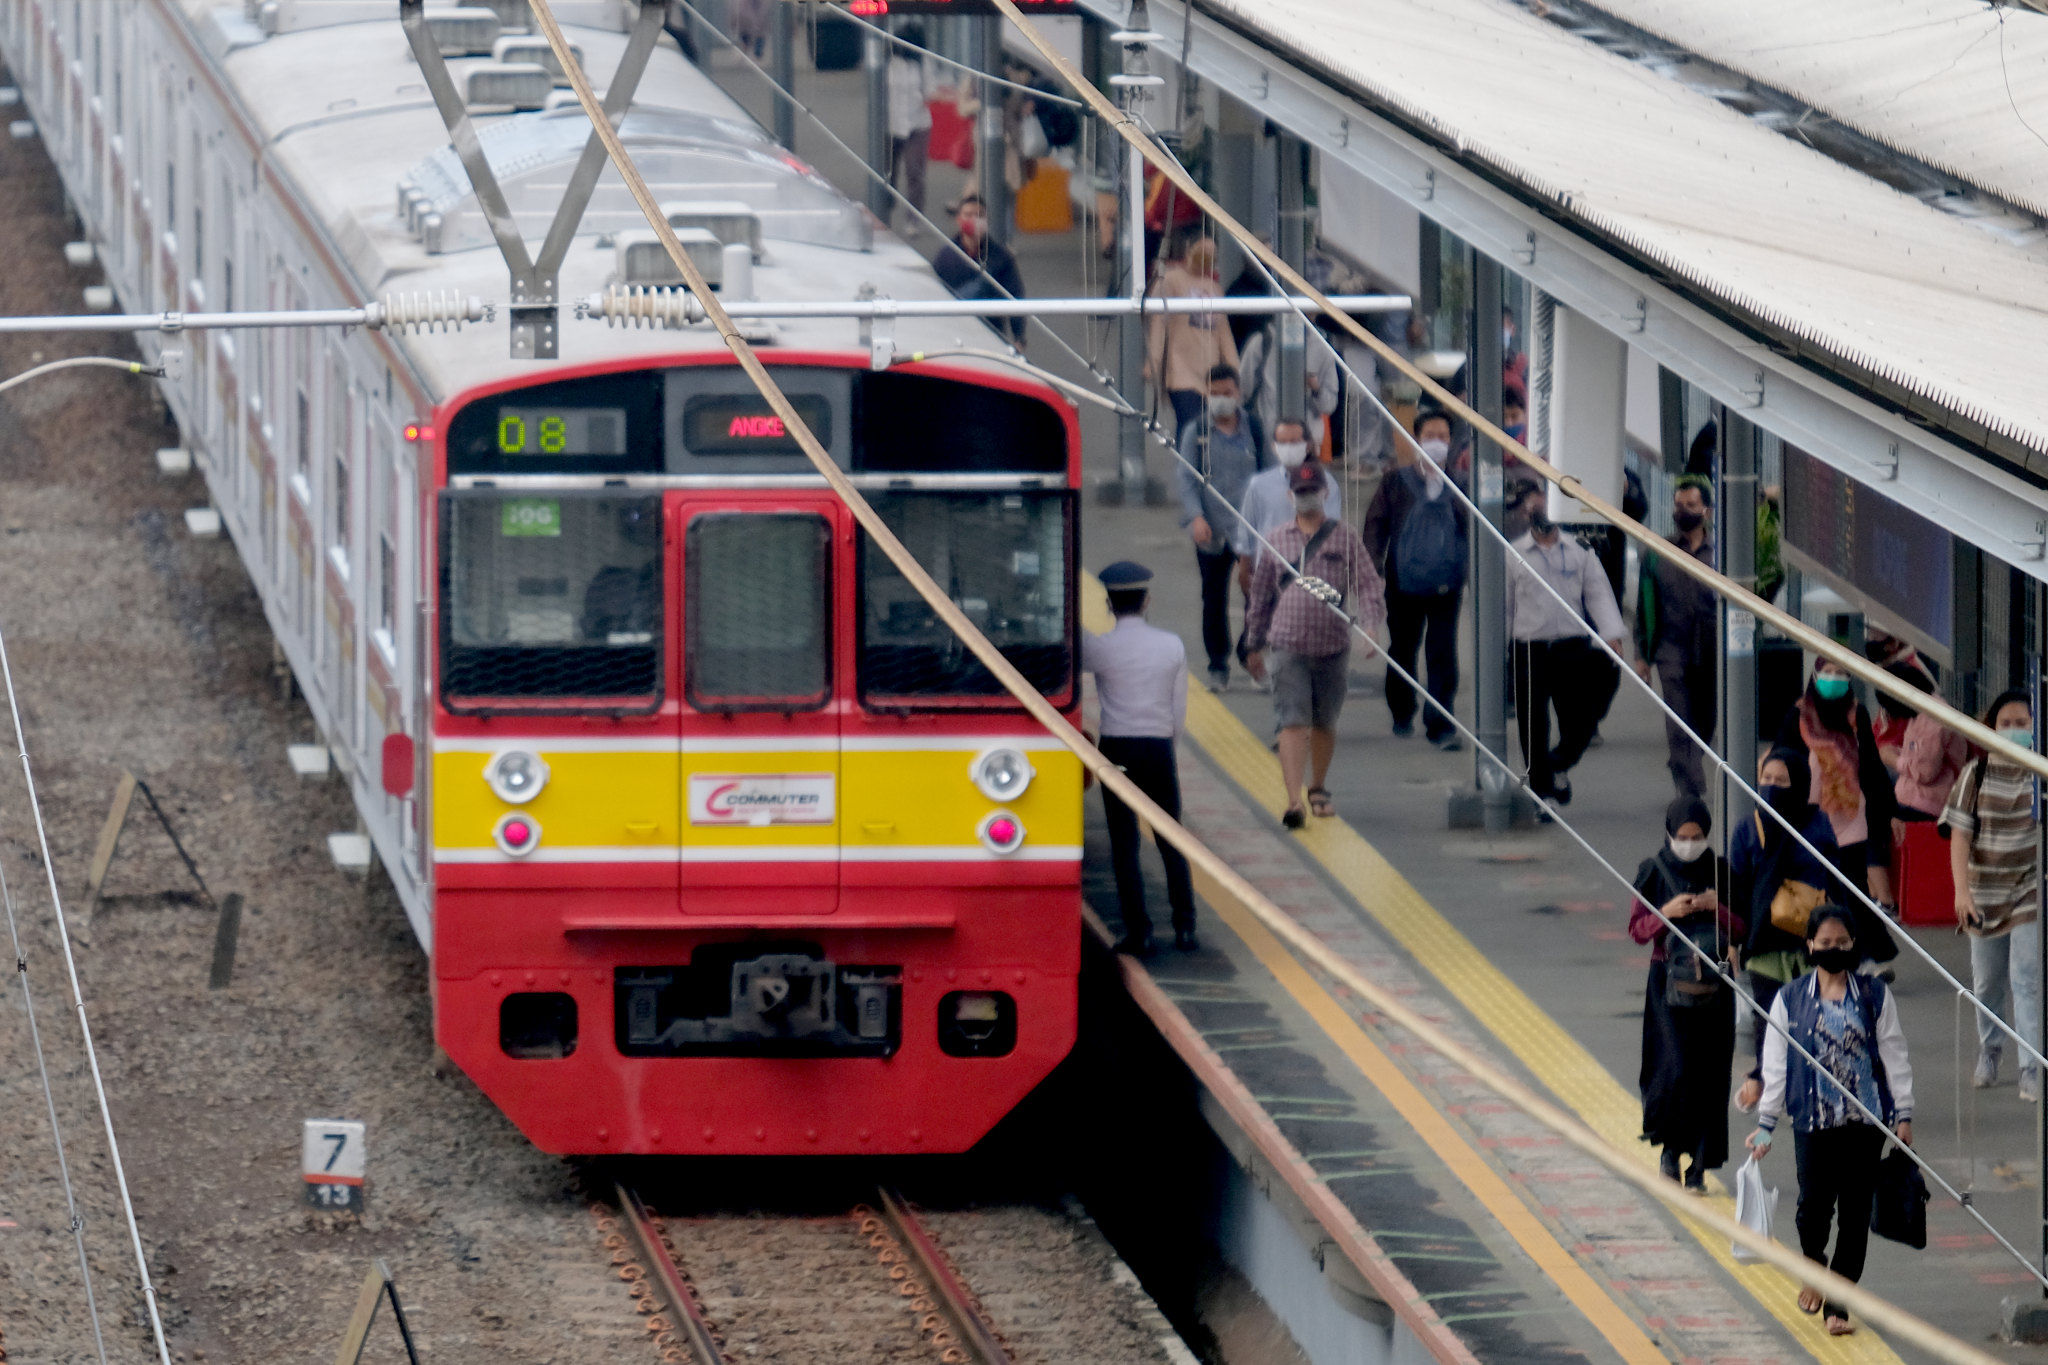 <p>Sejumlah penumpang berjalan di peron dekat rangkaian kereta listrik (KRL) di Stasiun Cawang, Jakarta, Senin, 14 September 2020. Pengguna transportasi KRL menurun drastis saat hari pertama pemberlakuan PSSB total. Pengguna KRL tercatat ada 92.546 pengguna atau berkurang hingga 19% dibandingkan Senin 7 September 2020 pekan lalu yang mencapai 114.075 pengguna pada waktu yang sama. Foto: Ismail Pohan/TrenAsia</p>
